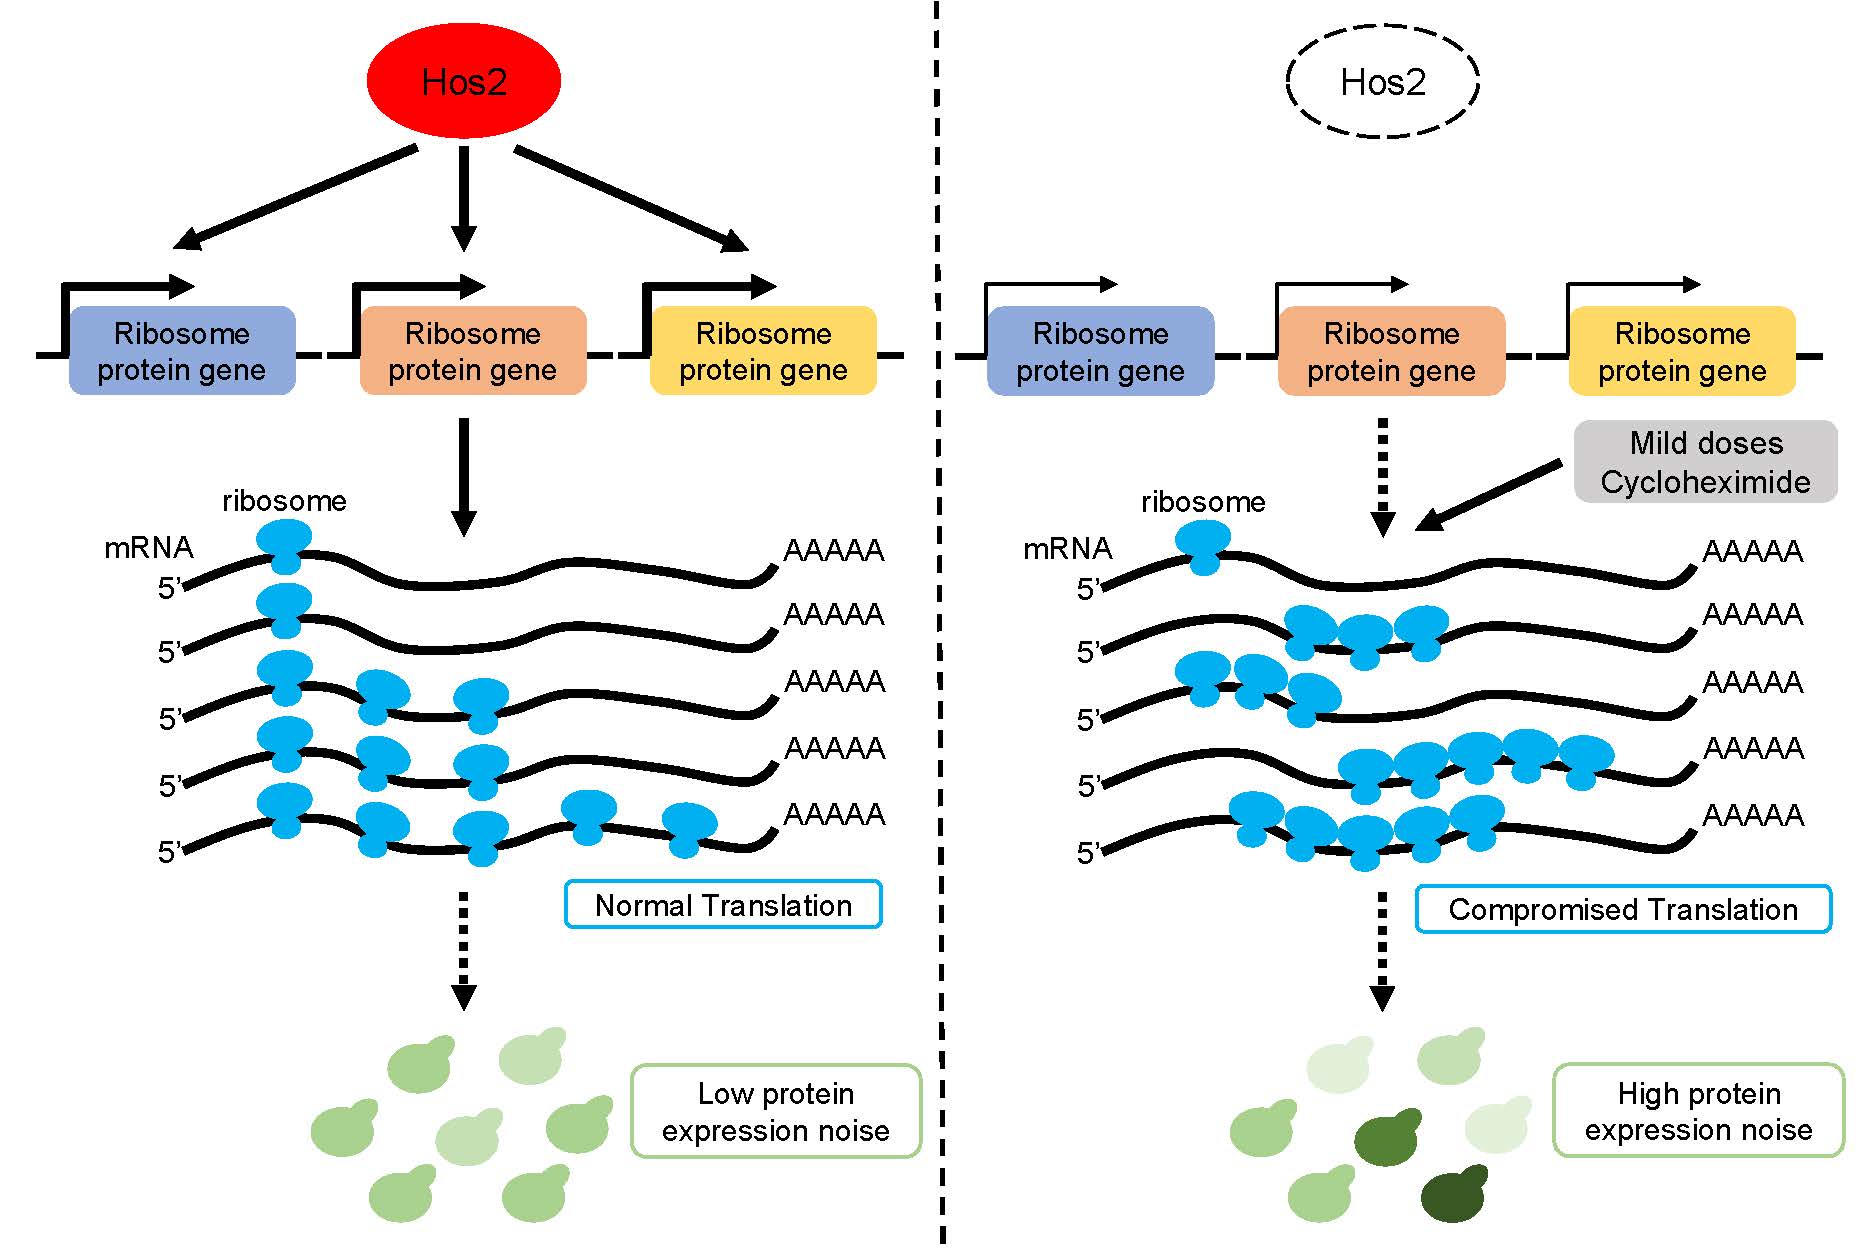 組蛋白去乙醯化酶 Hos2 透過蛋白質轉譯機制來調控蛋白質表現量雜訊